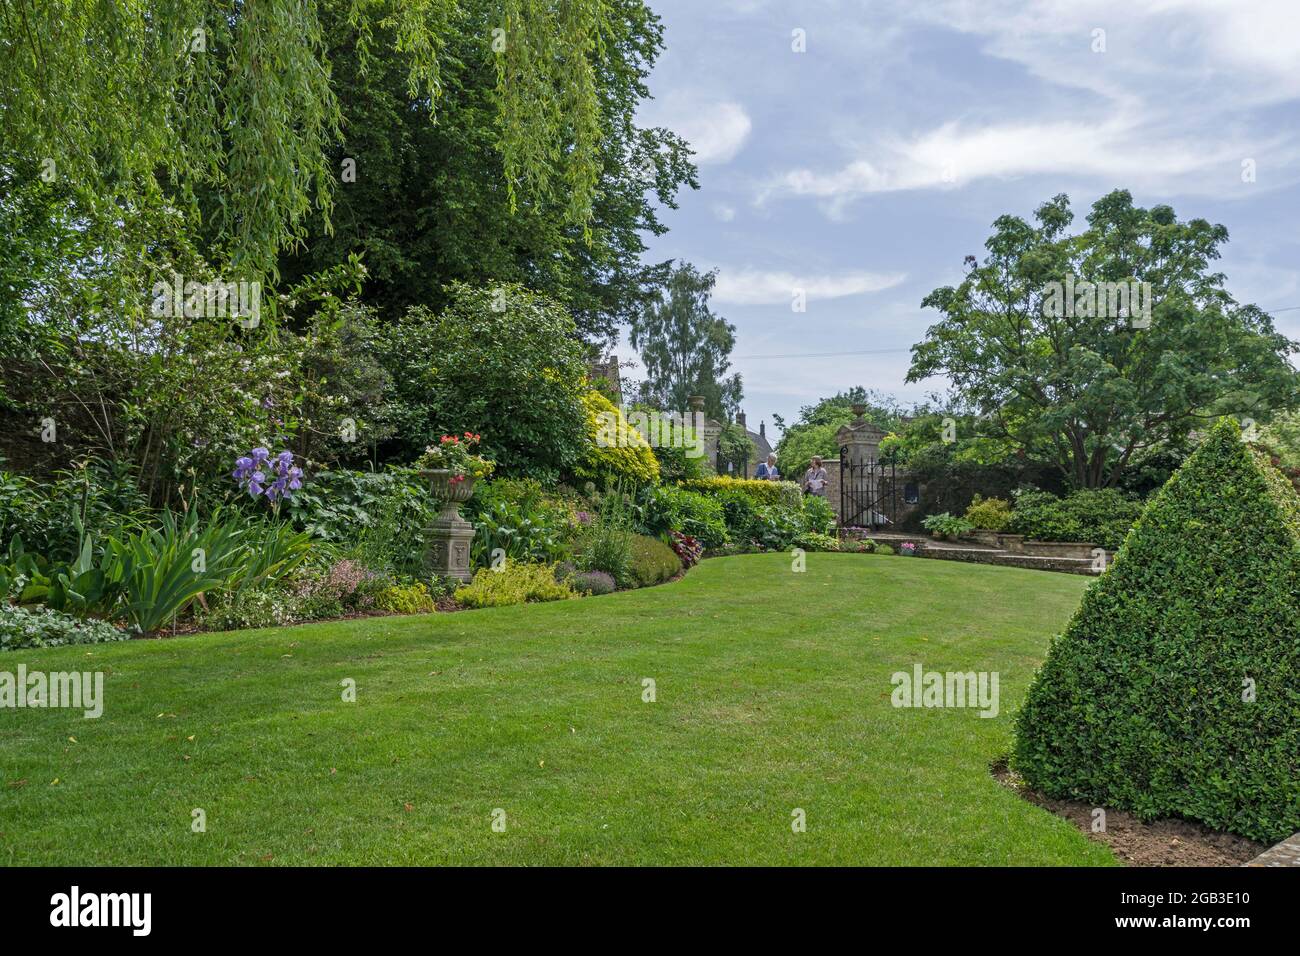 Typisch englisch im Sommer, Garten auf Rasen gelegt, Blumenbeete und Sträucher, geöffnet nach dem National Garden Scheme, Gayton, Northamptonshire, UK Stockfoto